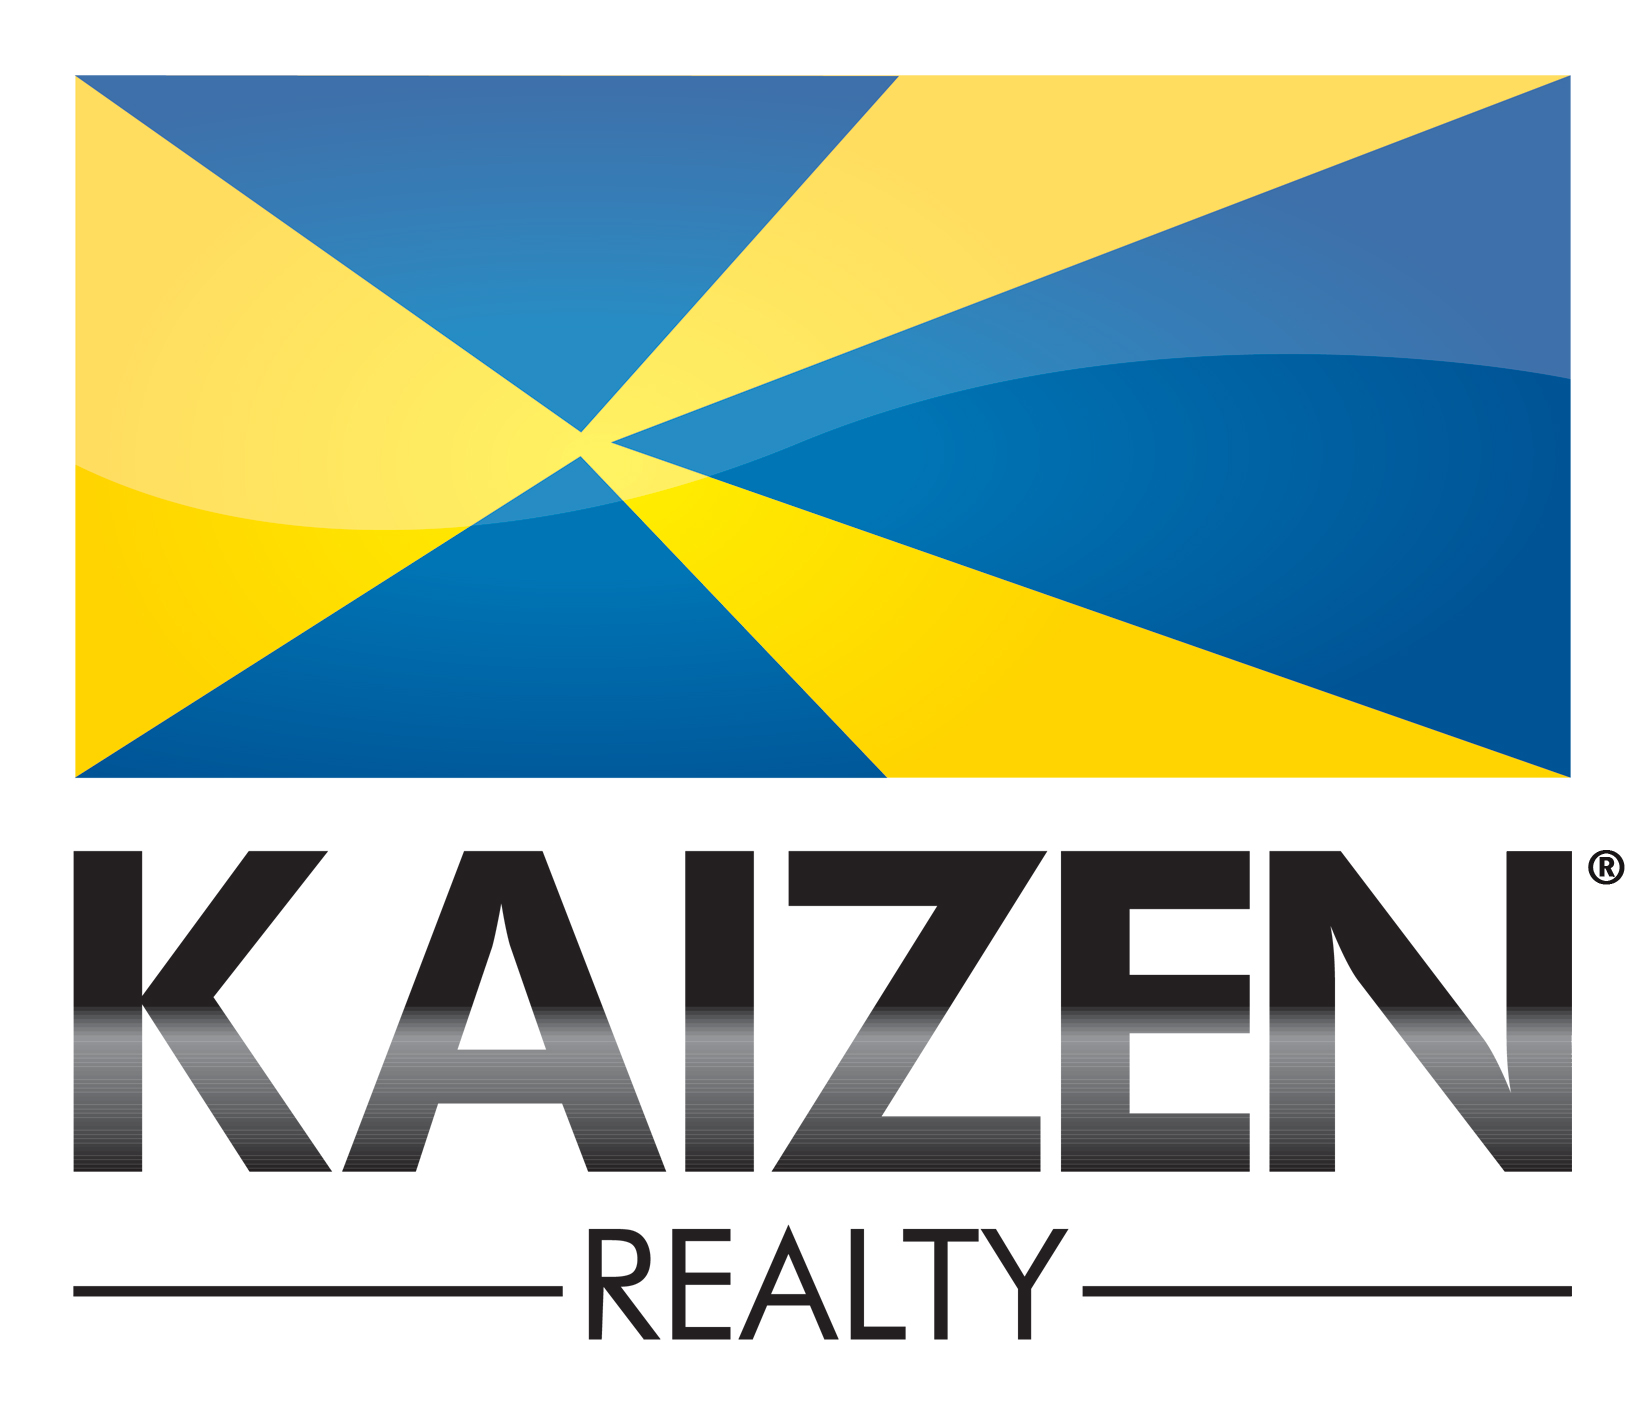 Bill Fatzinger - KAIZEN Realty Logo